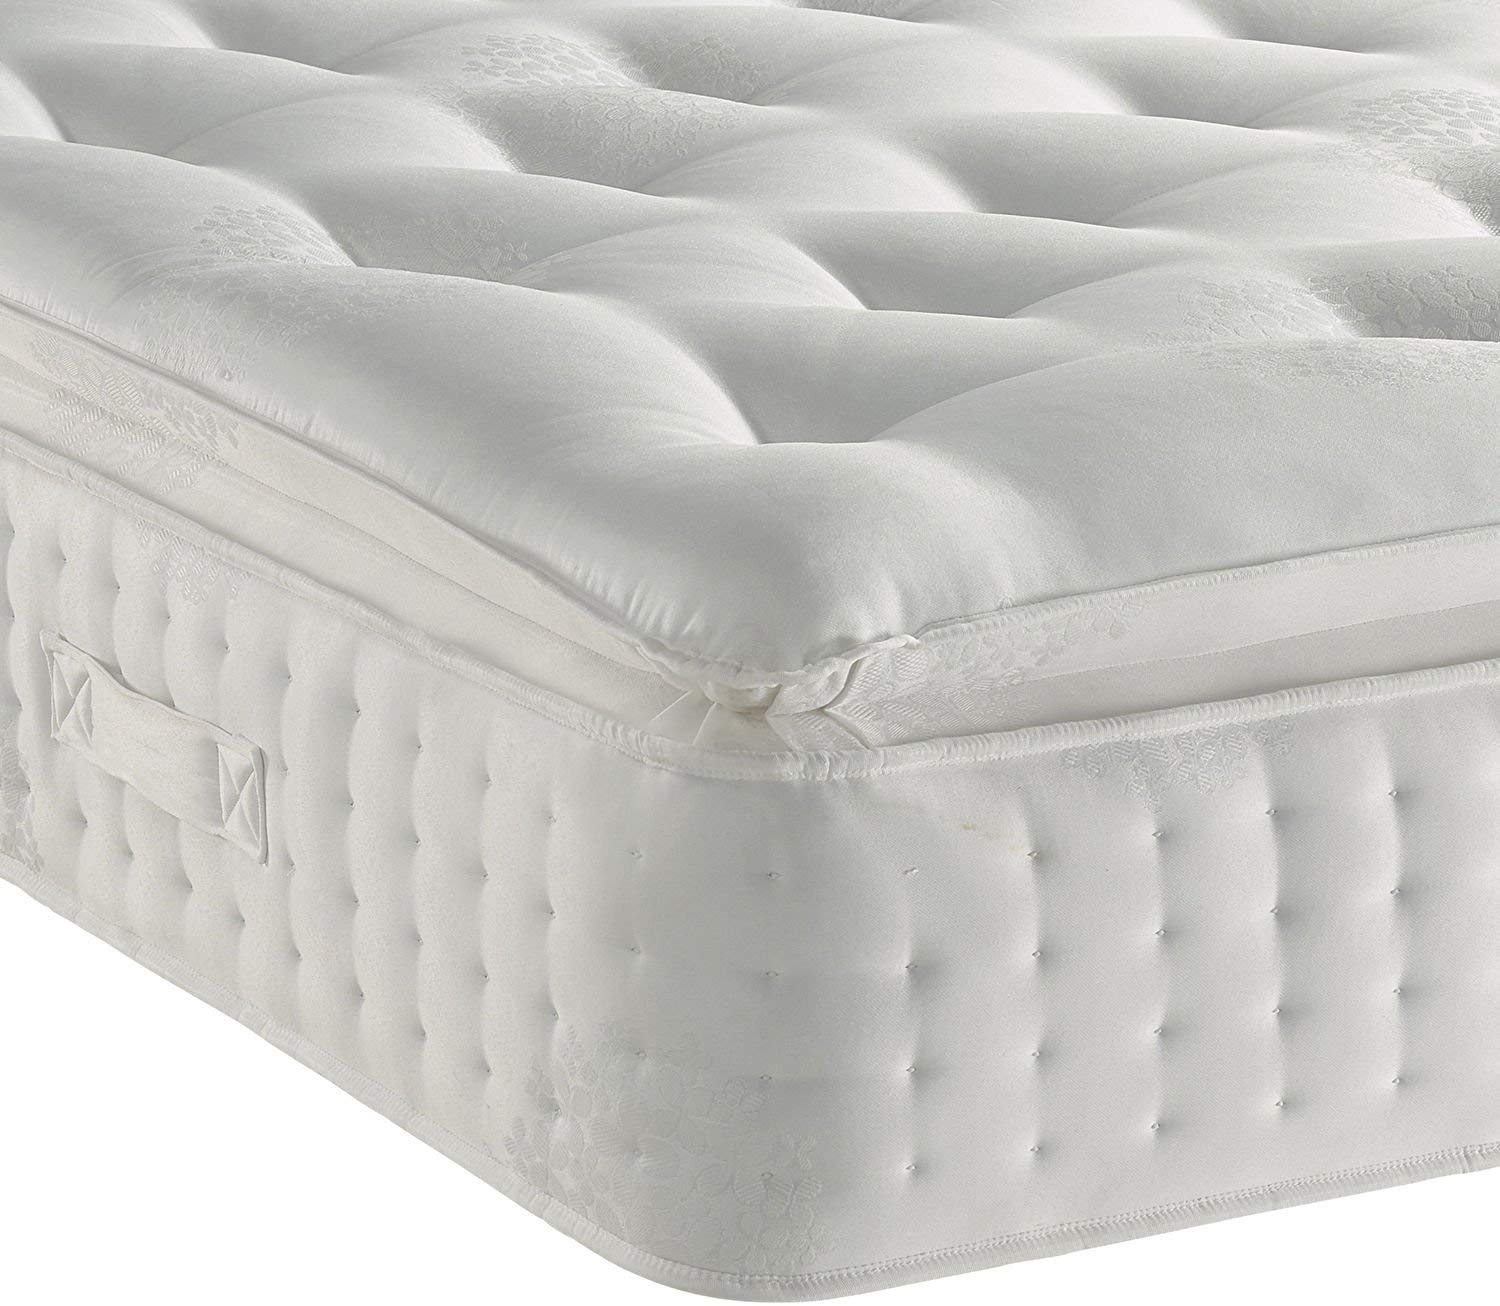 Sleep Factory 3000 Organic Pillow Top Mattress Review